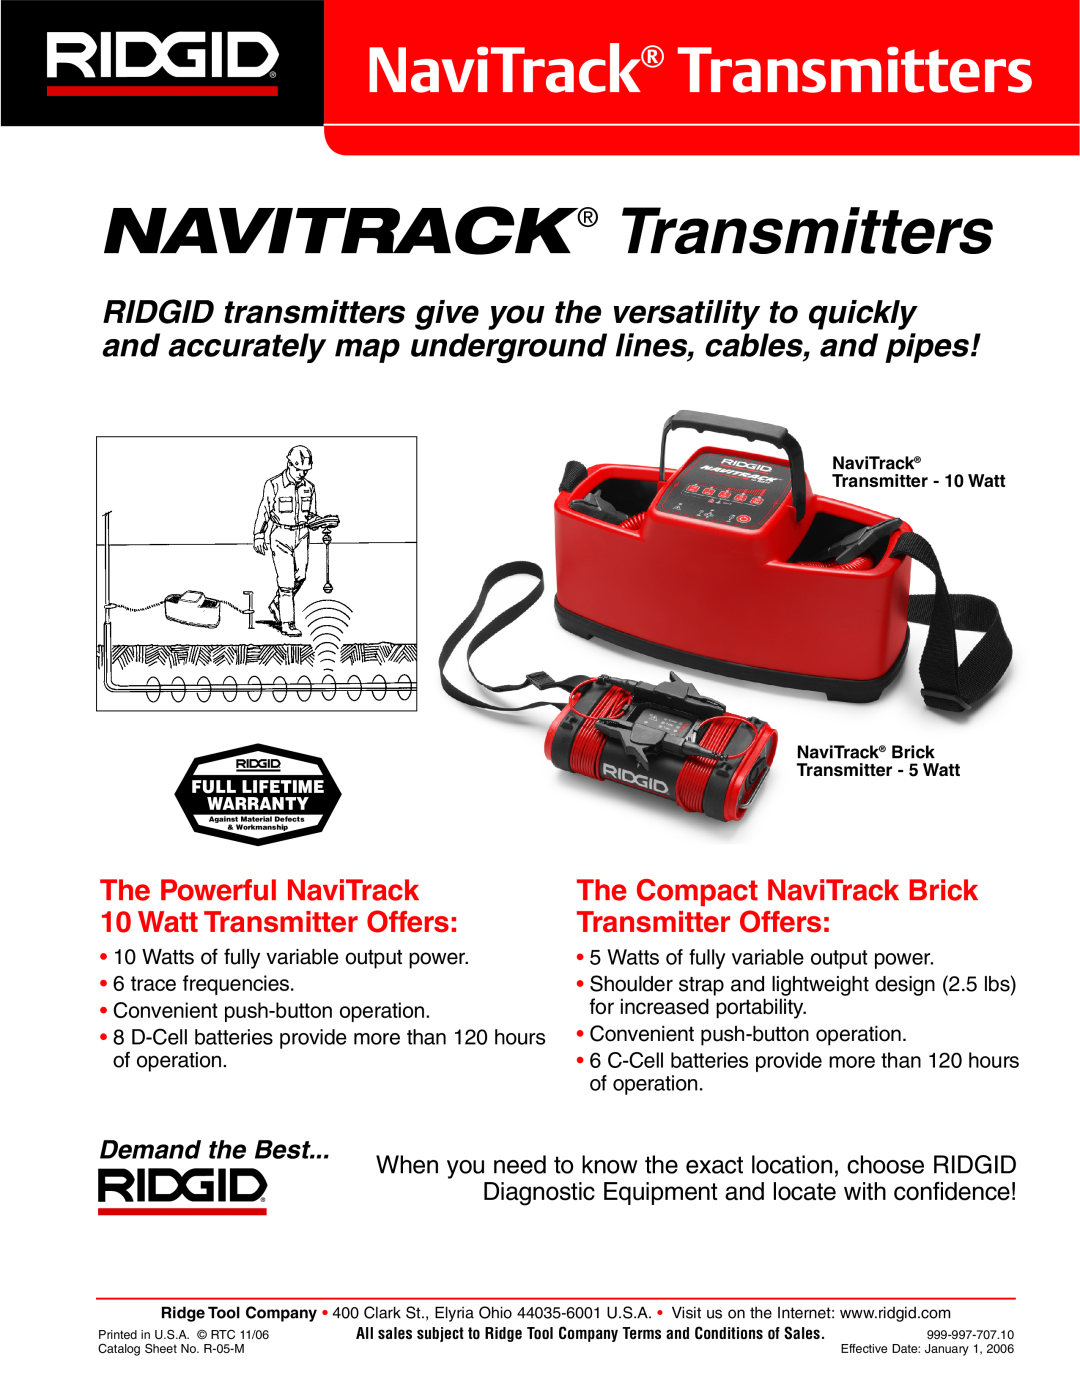 RIDGID WAP-7000 warranty NaviTrack Transmitters, NAVITRACK Transmitters, The Powerful NaviTrack 10 Watt Transmitter Offers 